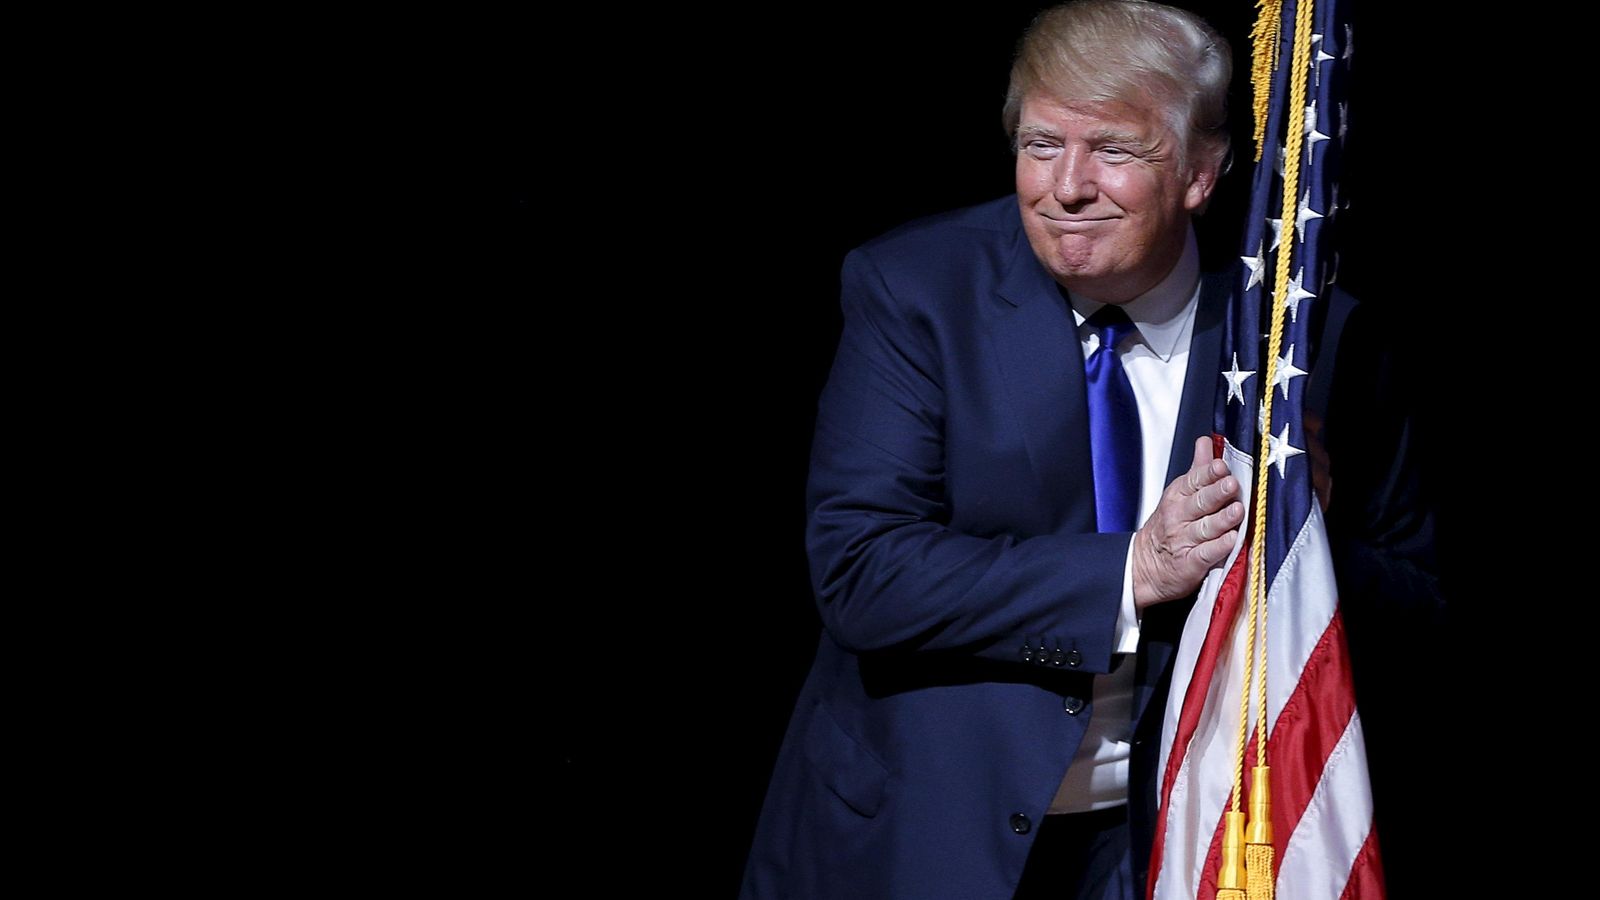 Foto: El candidato presidencial republicano Donald Trump abraza una bandera de EEUU durante un mitin electoral en Derry, New Hampshire, el 19 de agosto de 2015 (Reuters). 